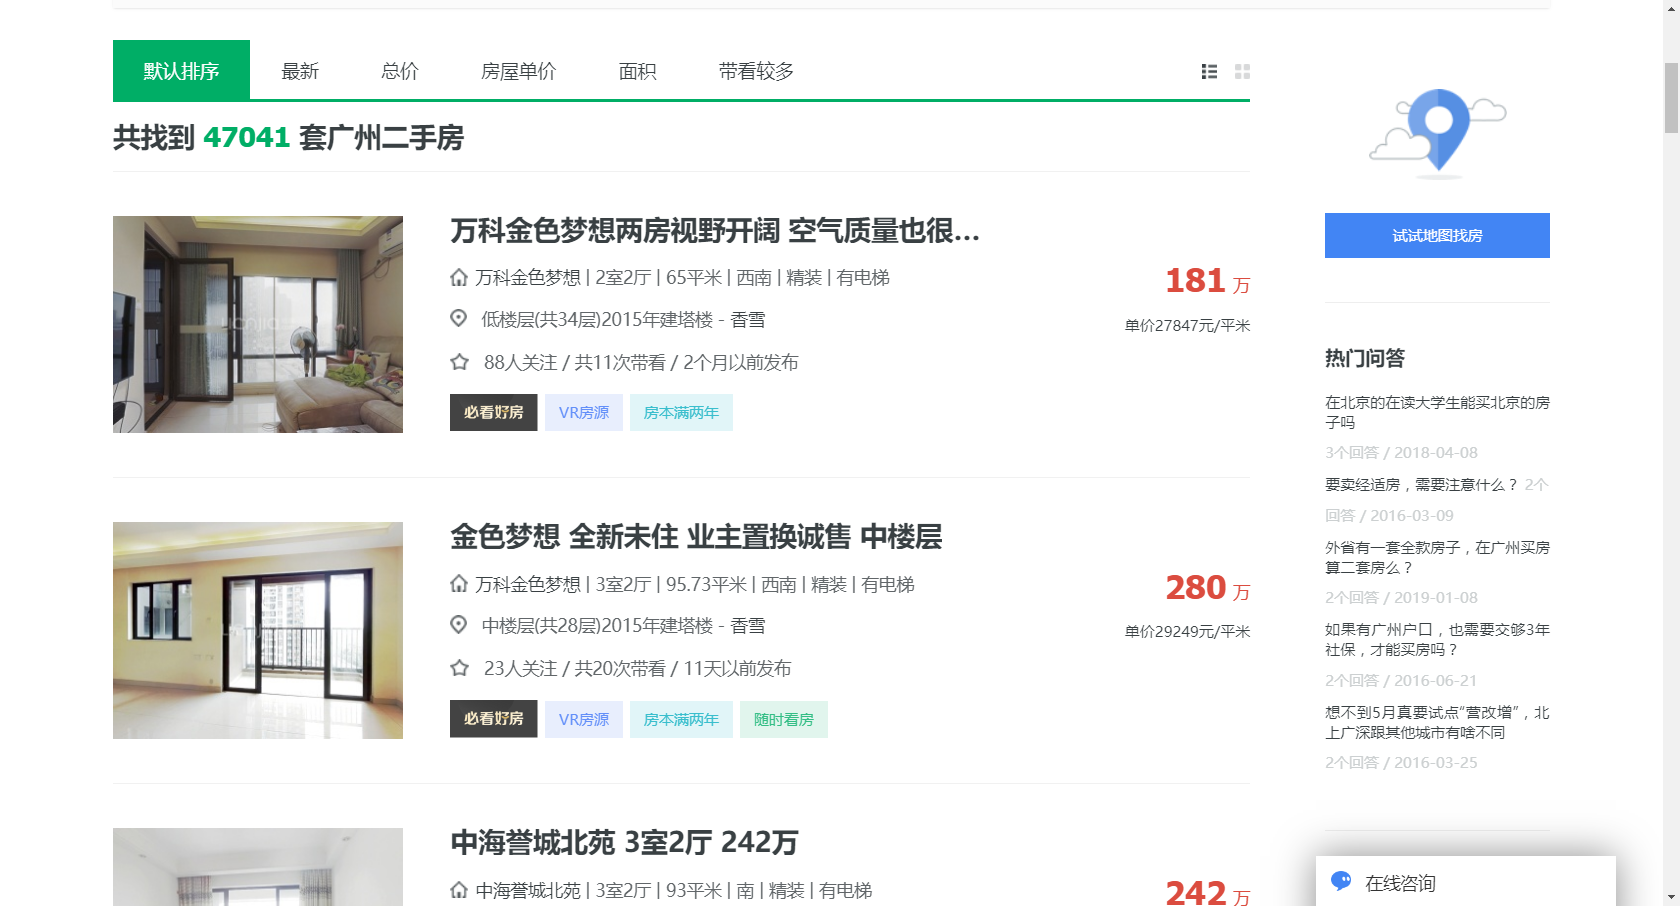 lianjia homepage